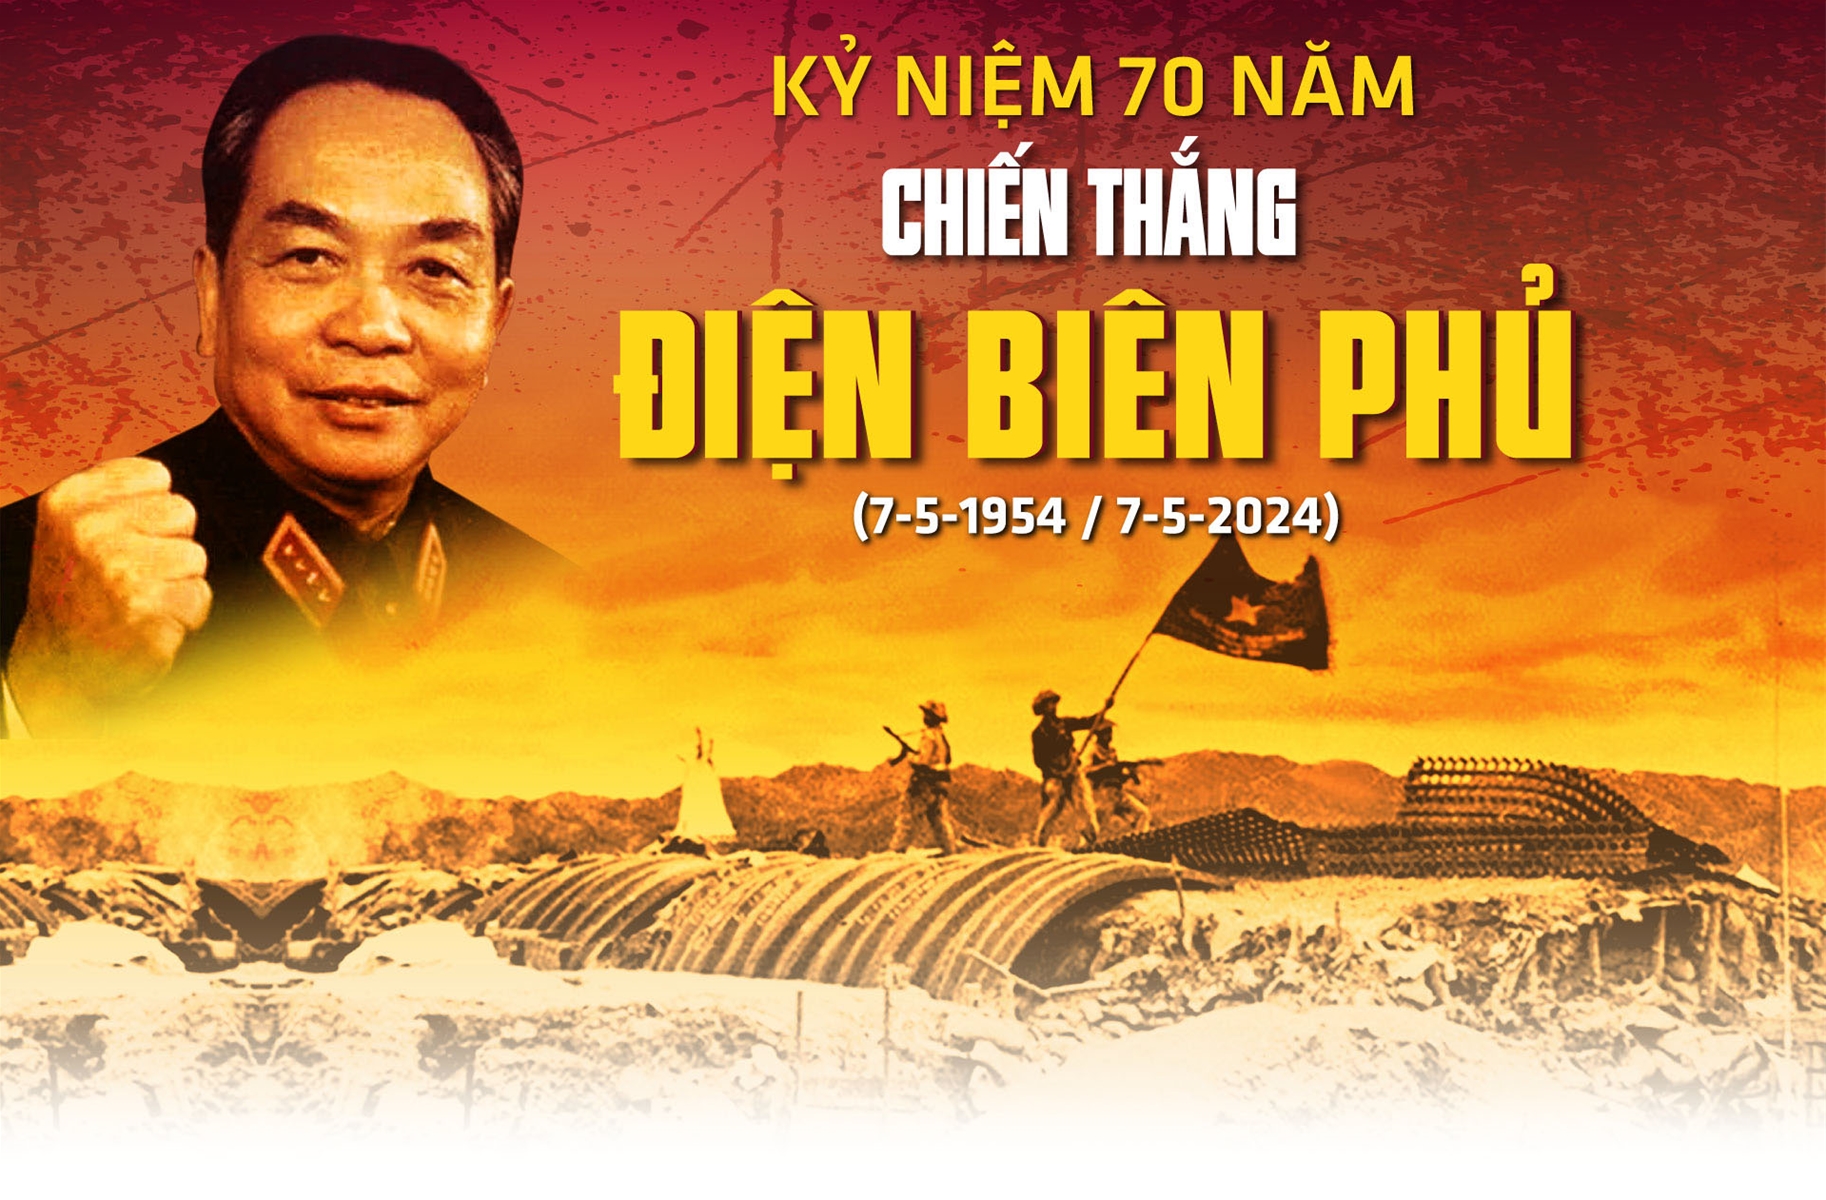 KỶ NIỆM 70 NĂM CHIẾN THẮNG ĐIỆN BIÊN PHỦ (7-5-1954/7-5-2024) - Chiến thắng Điện Biên Phủ - Mốc son lịch sử